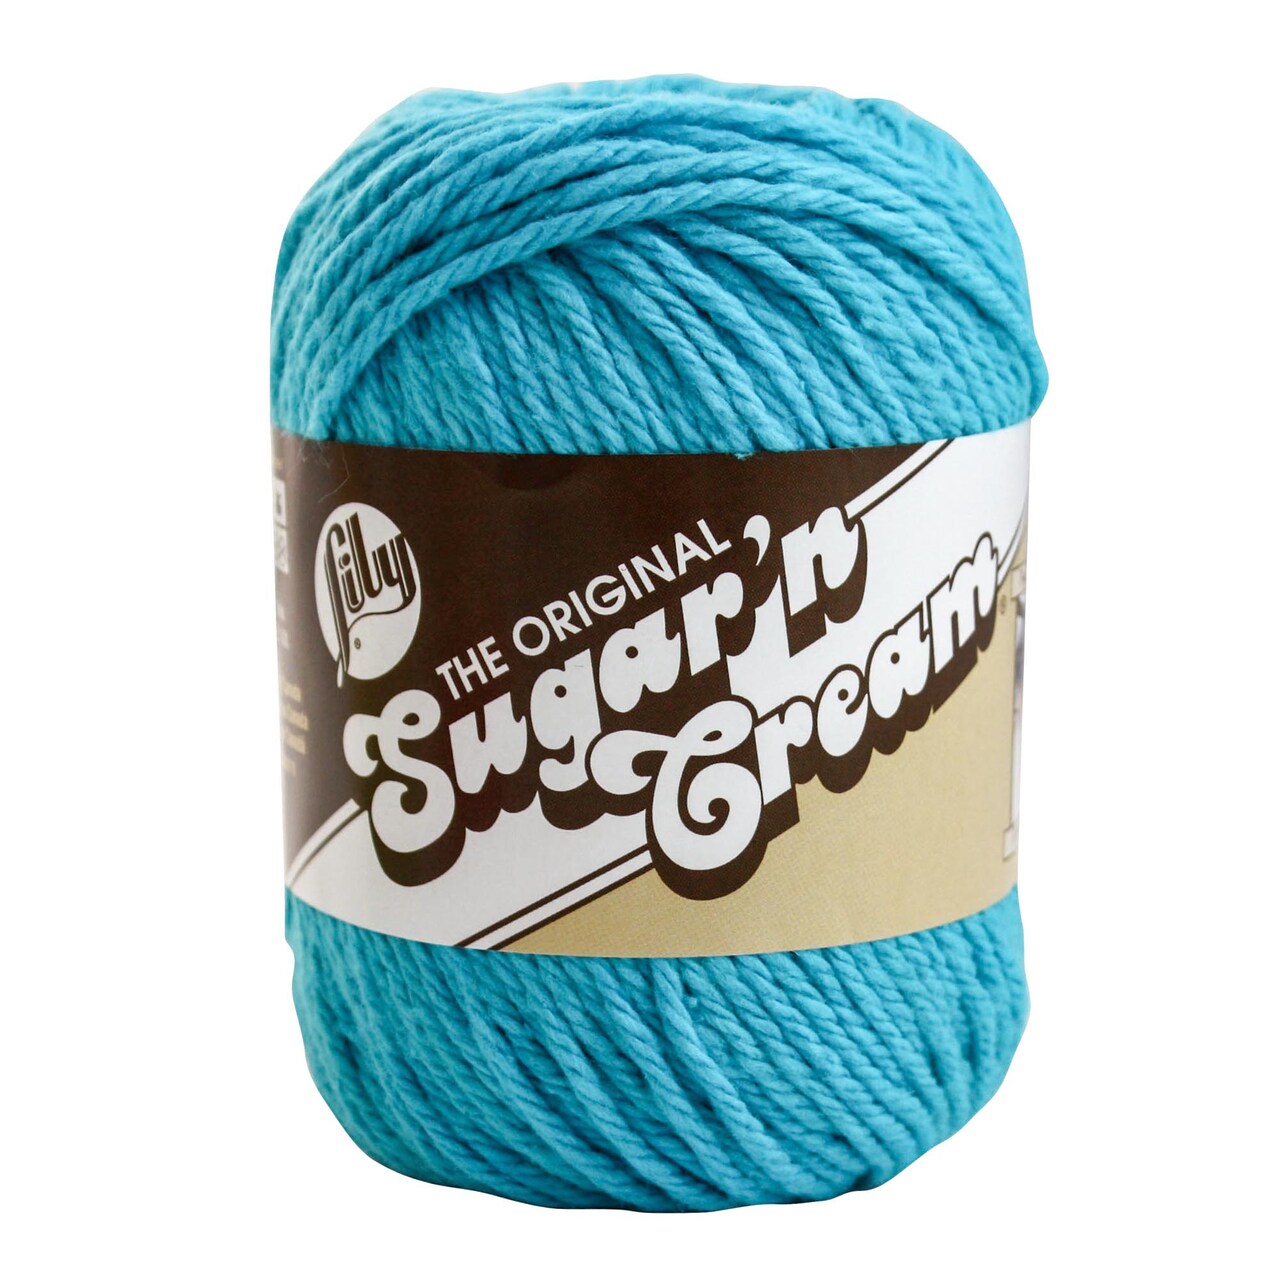 Lily Sugar'N Cream Hot Blue Yarn - 6 Pack of 71g/2.5oz - Cotton